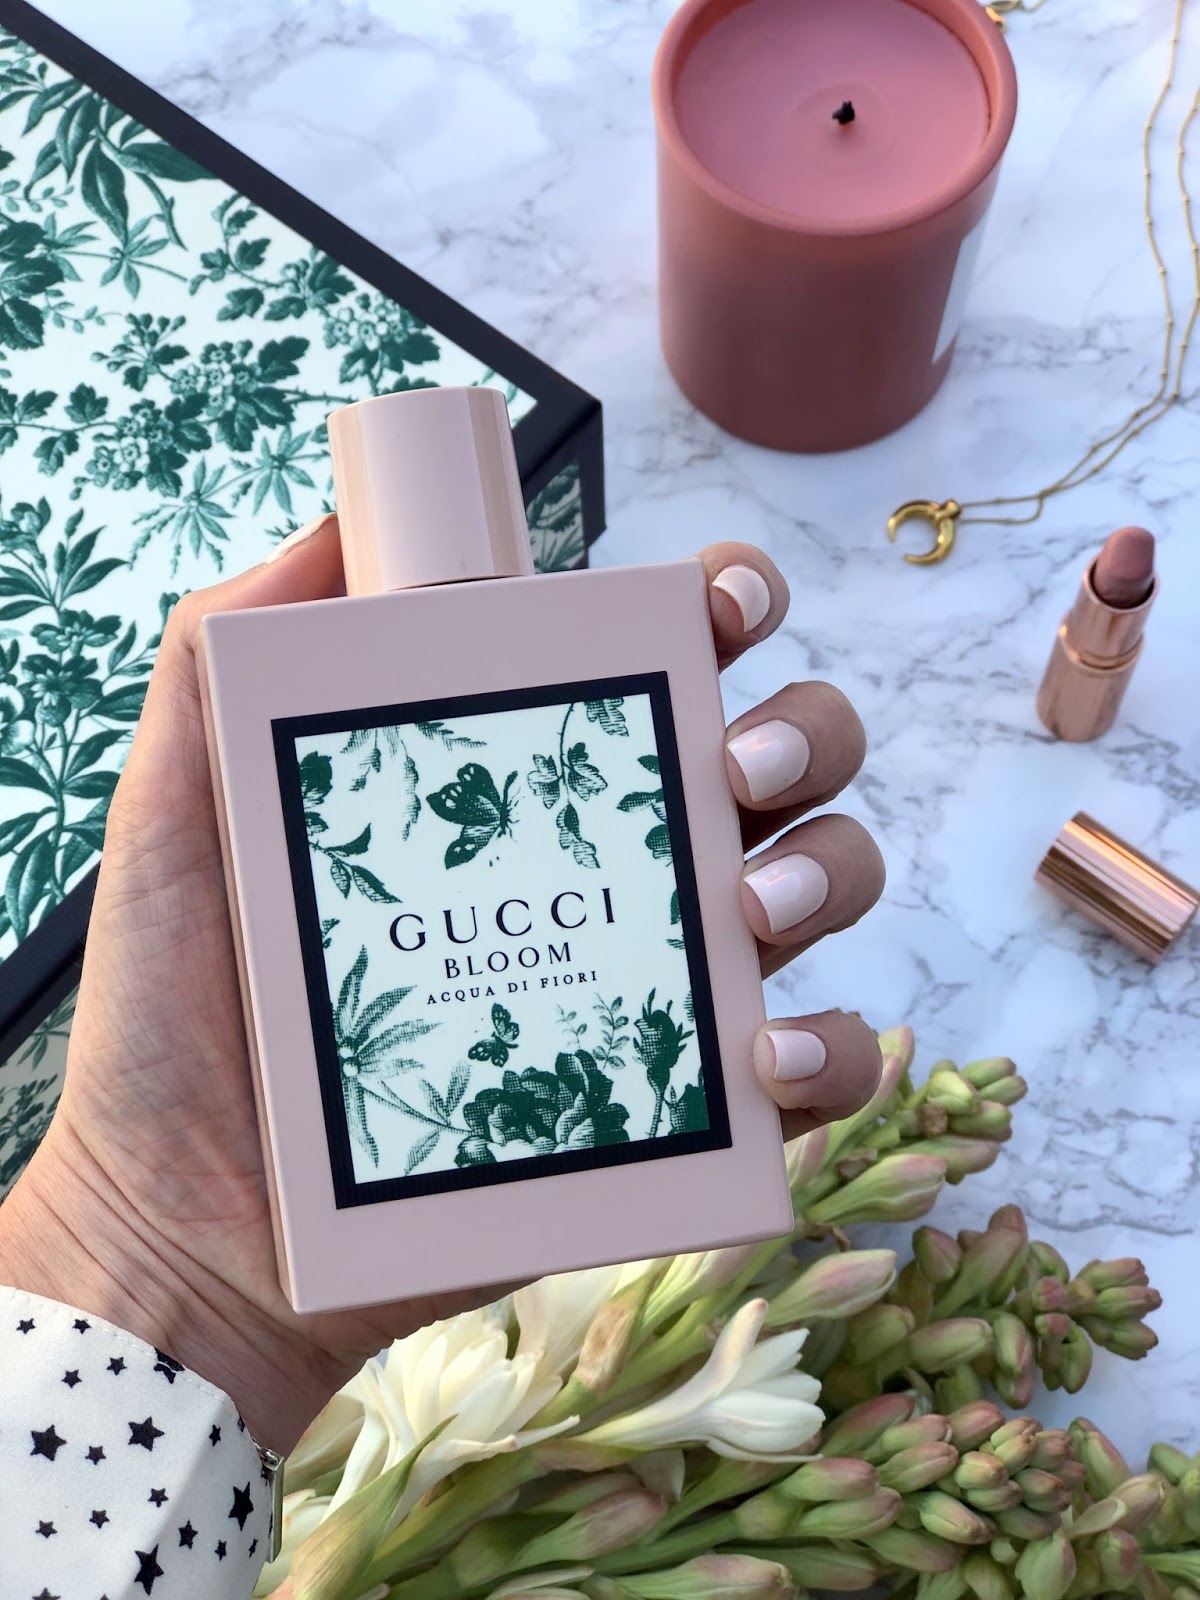 “Gucci Bloom Acqua di Fiori”的图片搜索结果